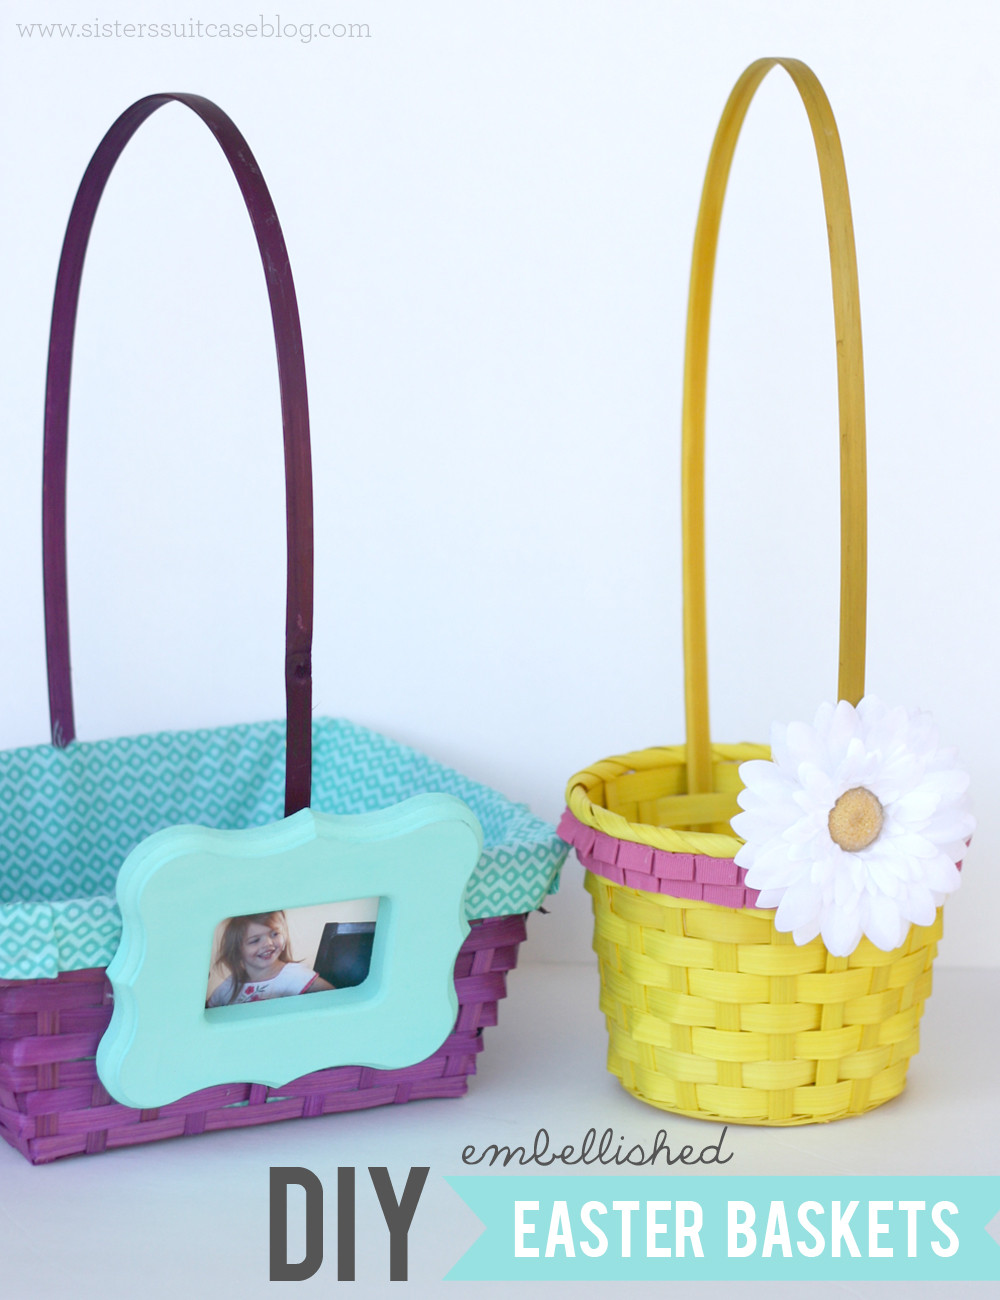 DIY Easter Baskets For Kids
 DIY Embellished Easter Baskets My Sister s Suitcase